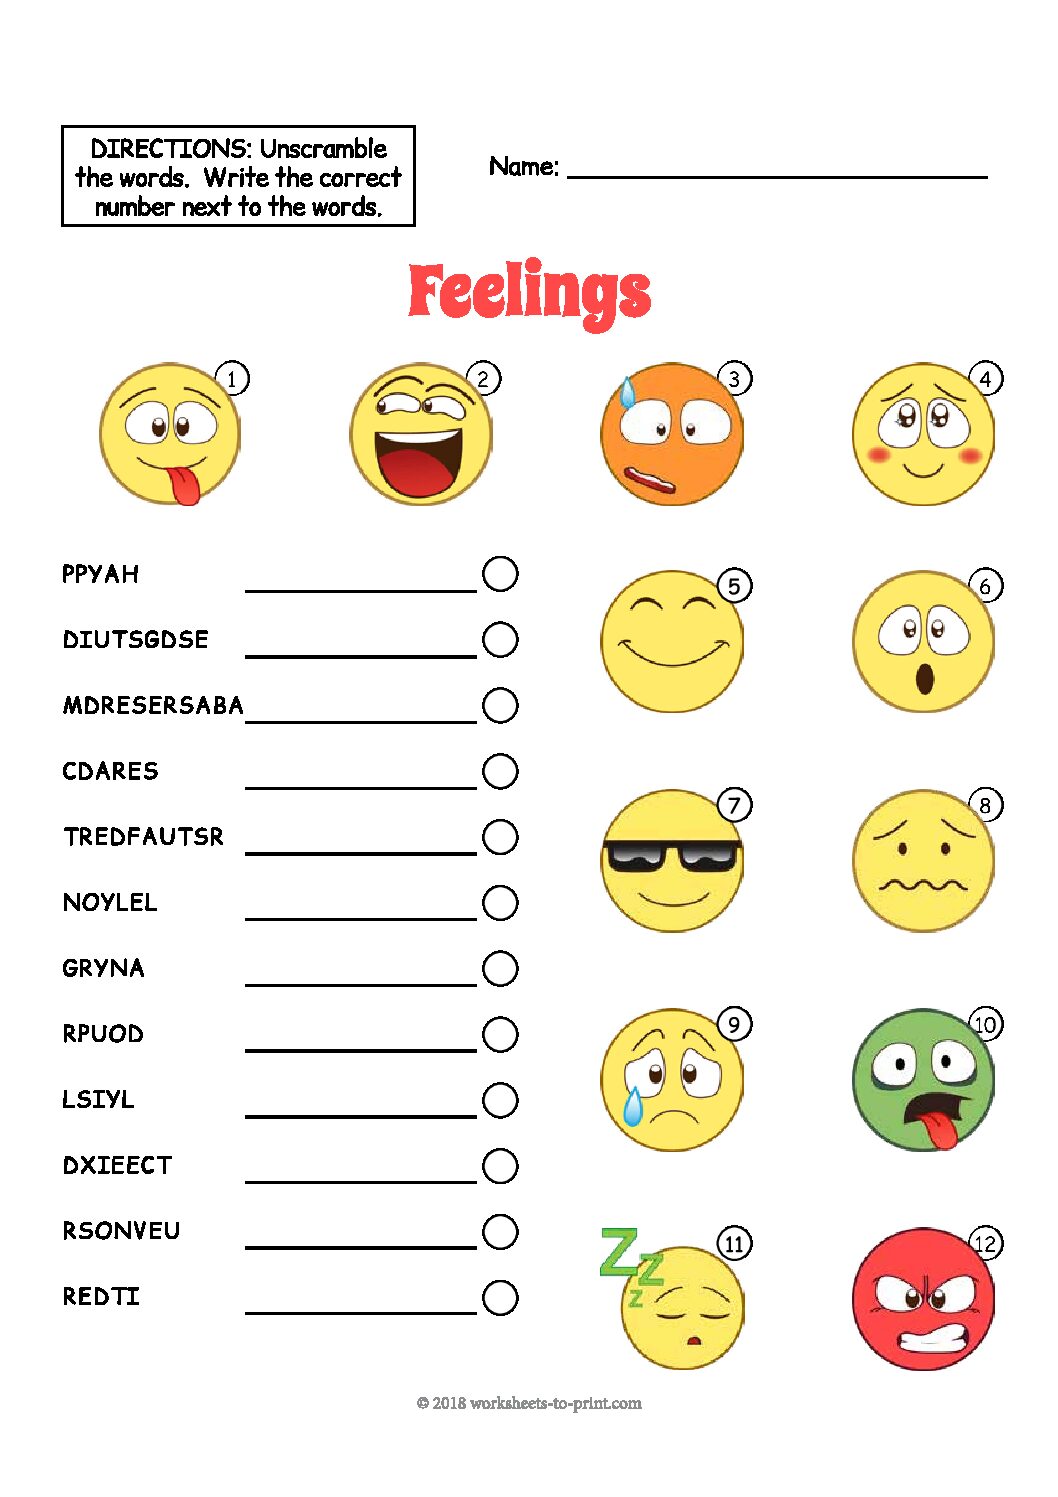 feelings-vocabulary-worksheet-language-advisor